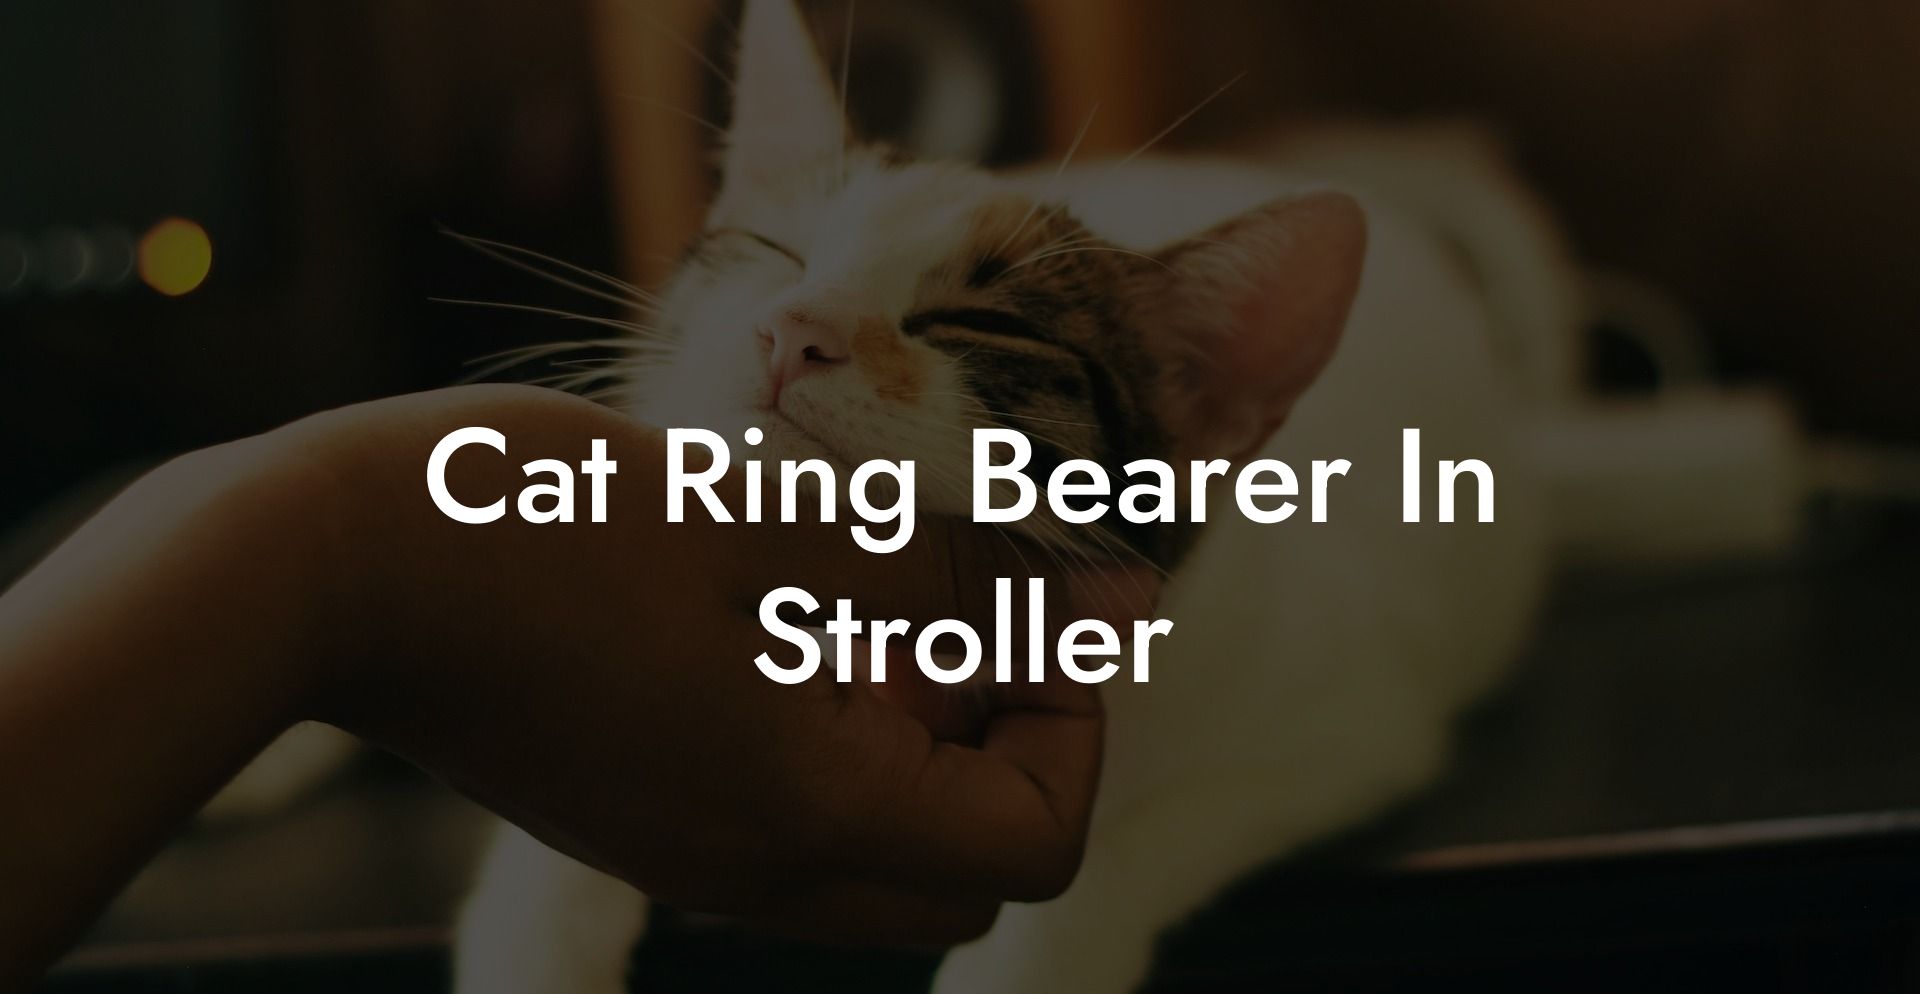 Cat Ring Bearer In Stroller